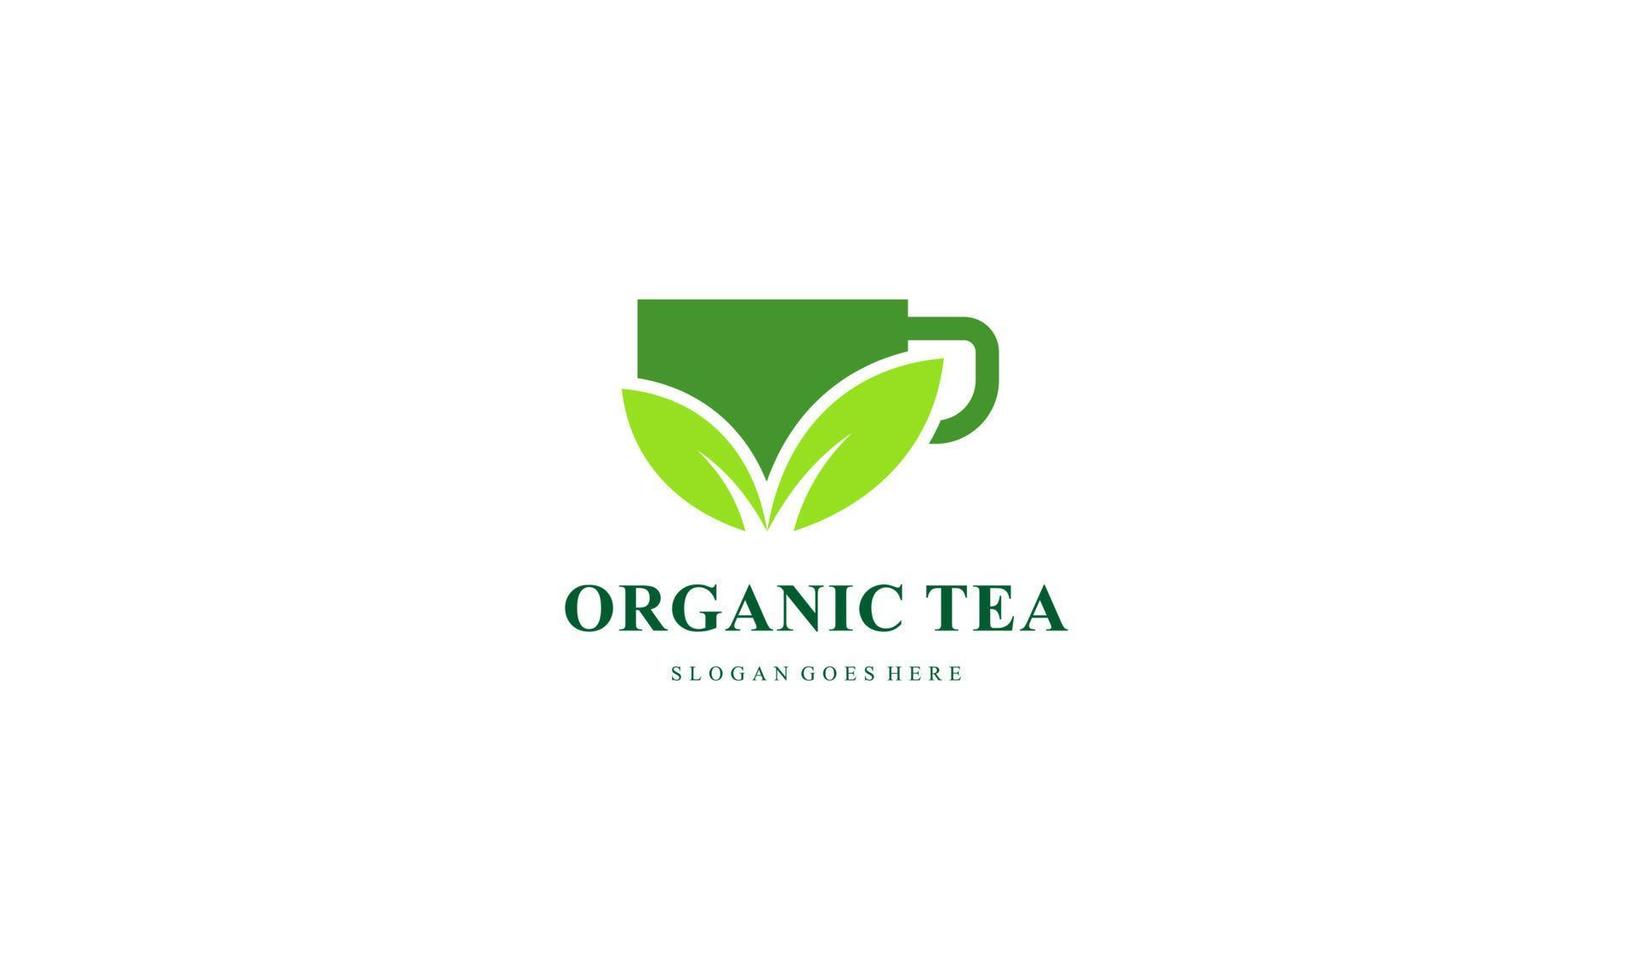 orgánico verde té logo vector